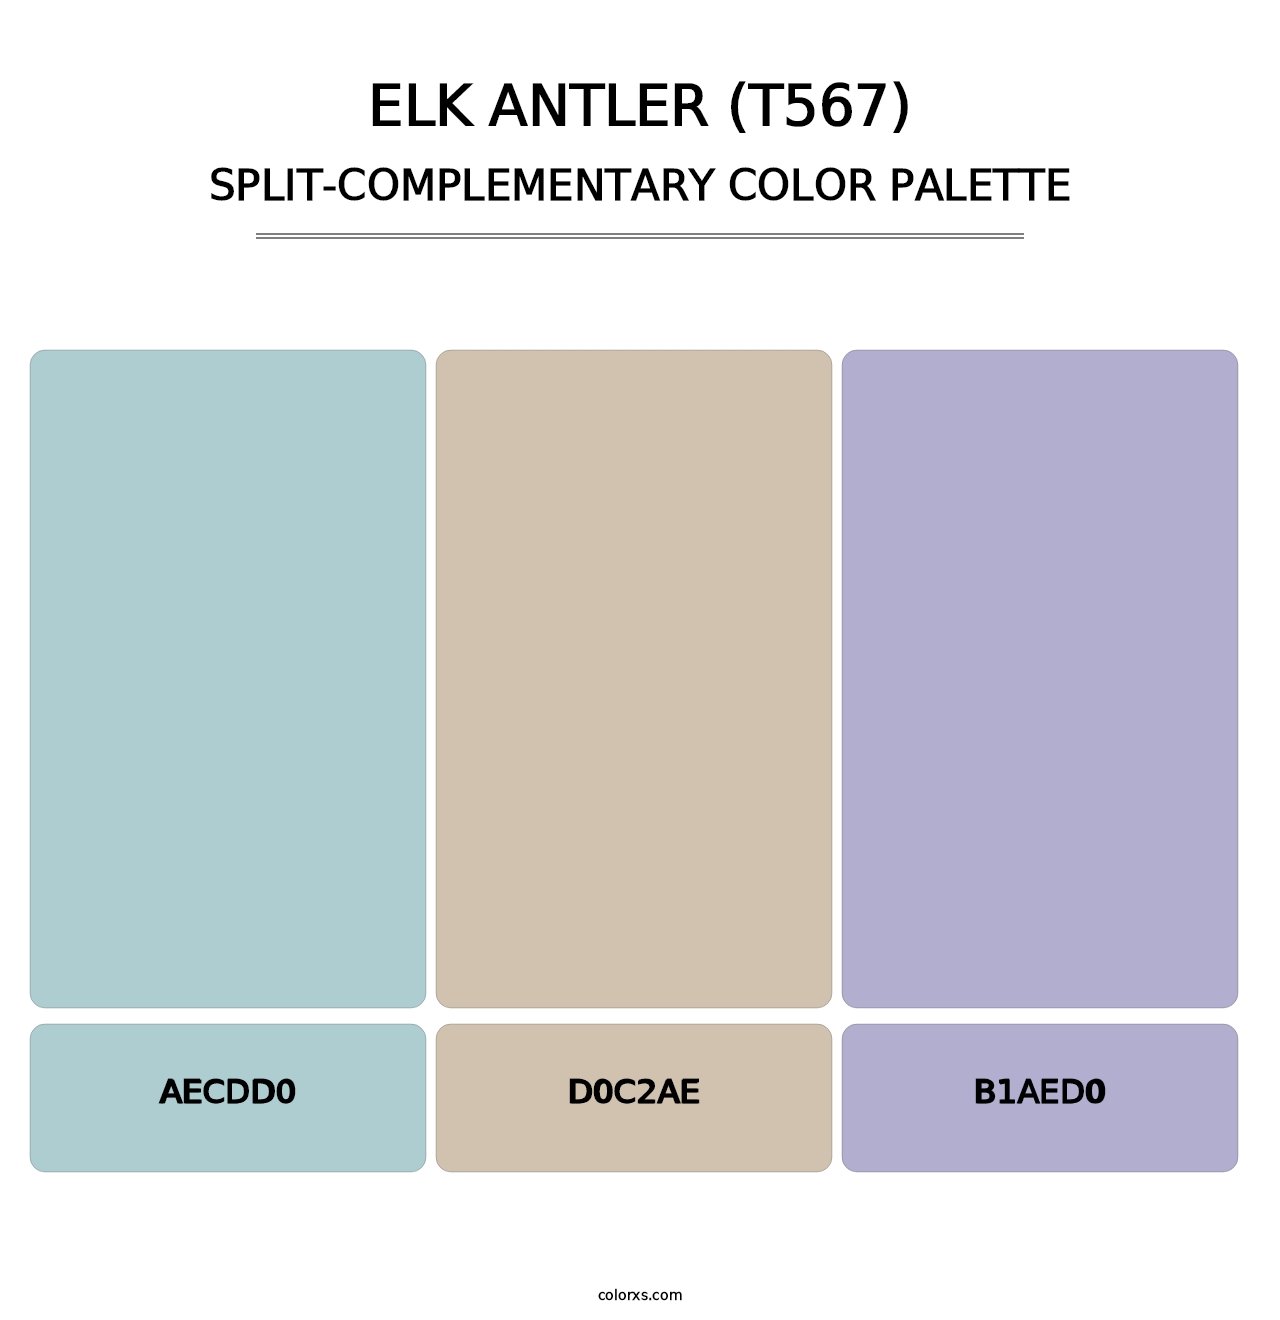 Elk Antler (T567) - Split-Complementary Color Palette